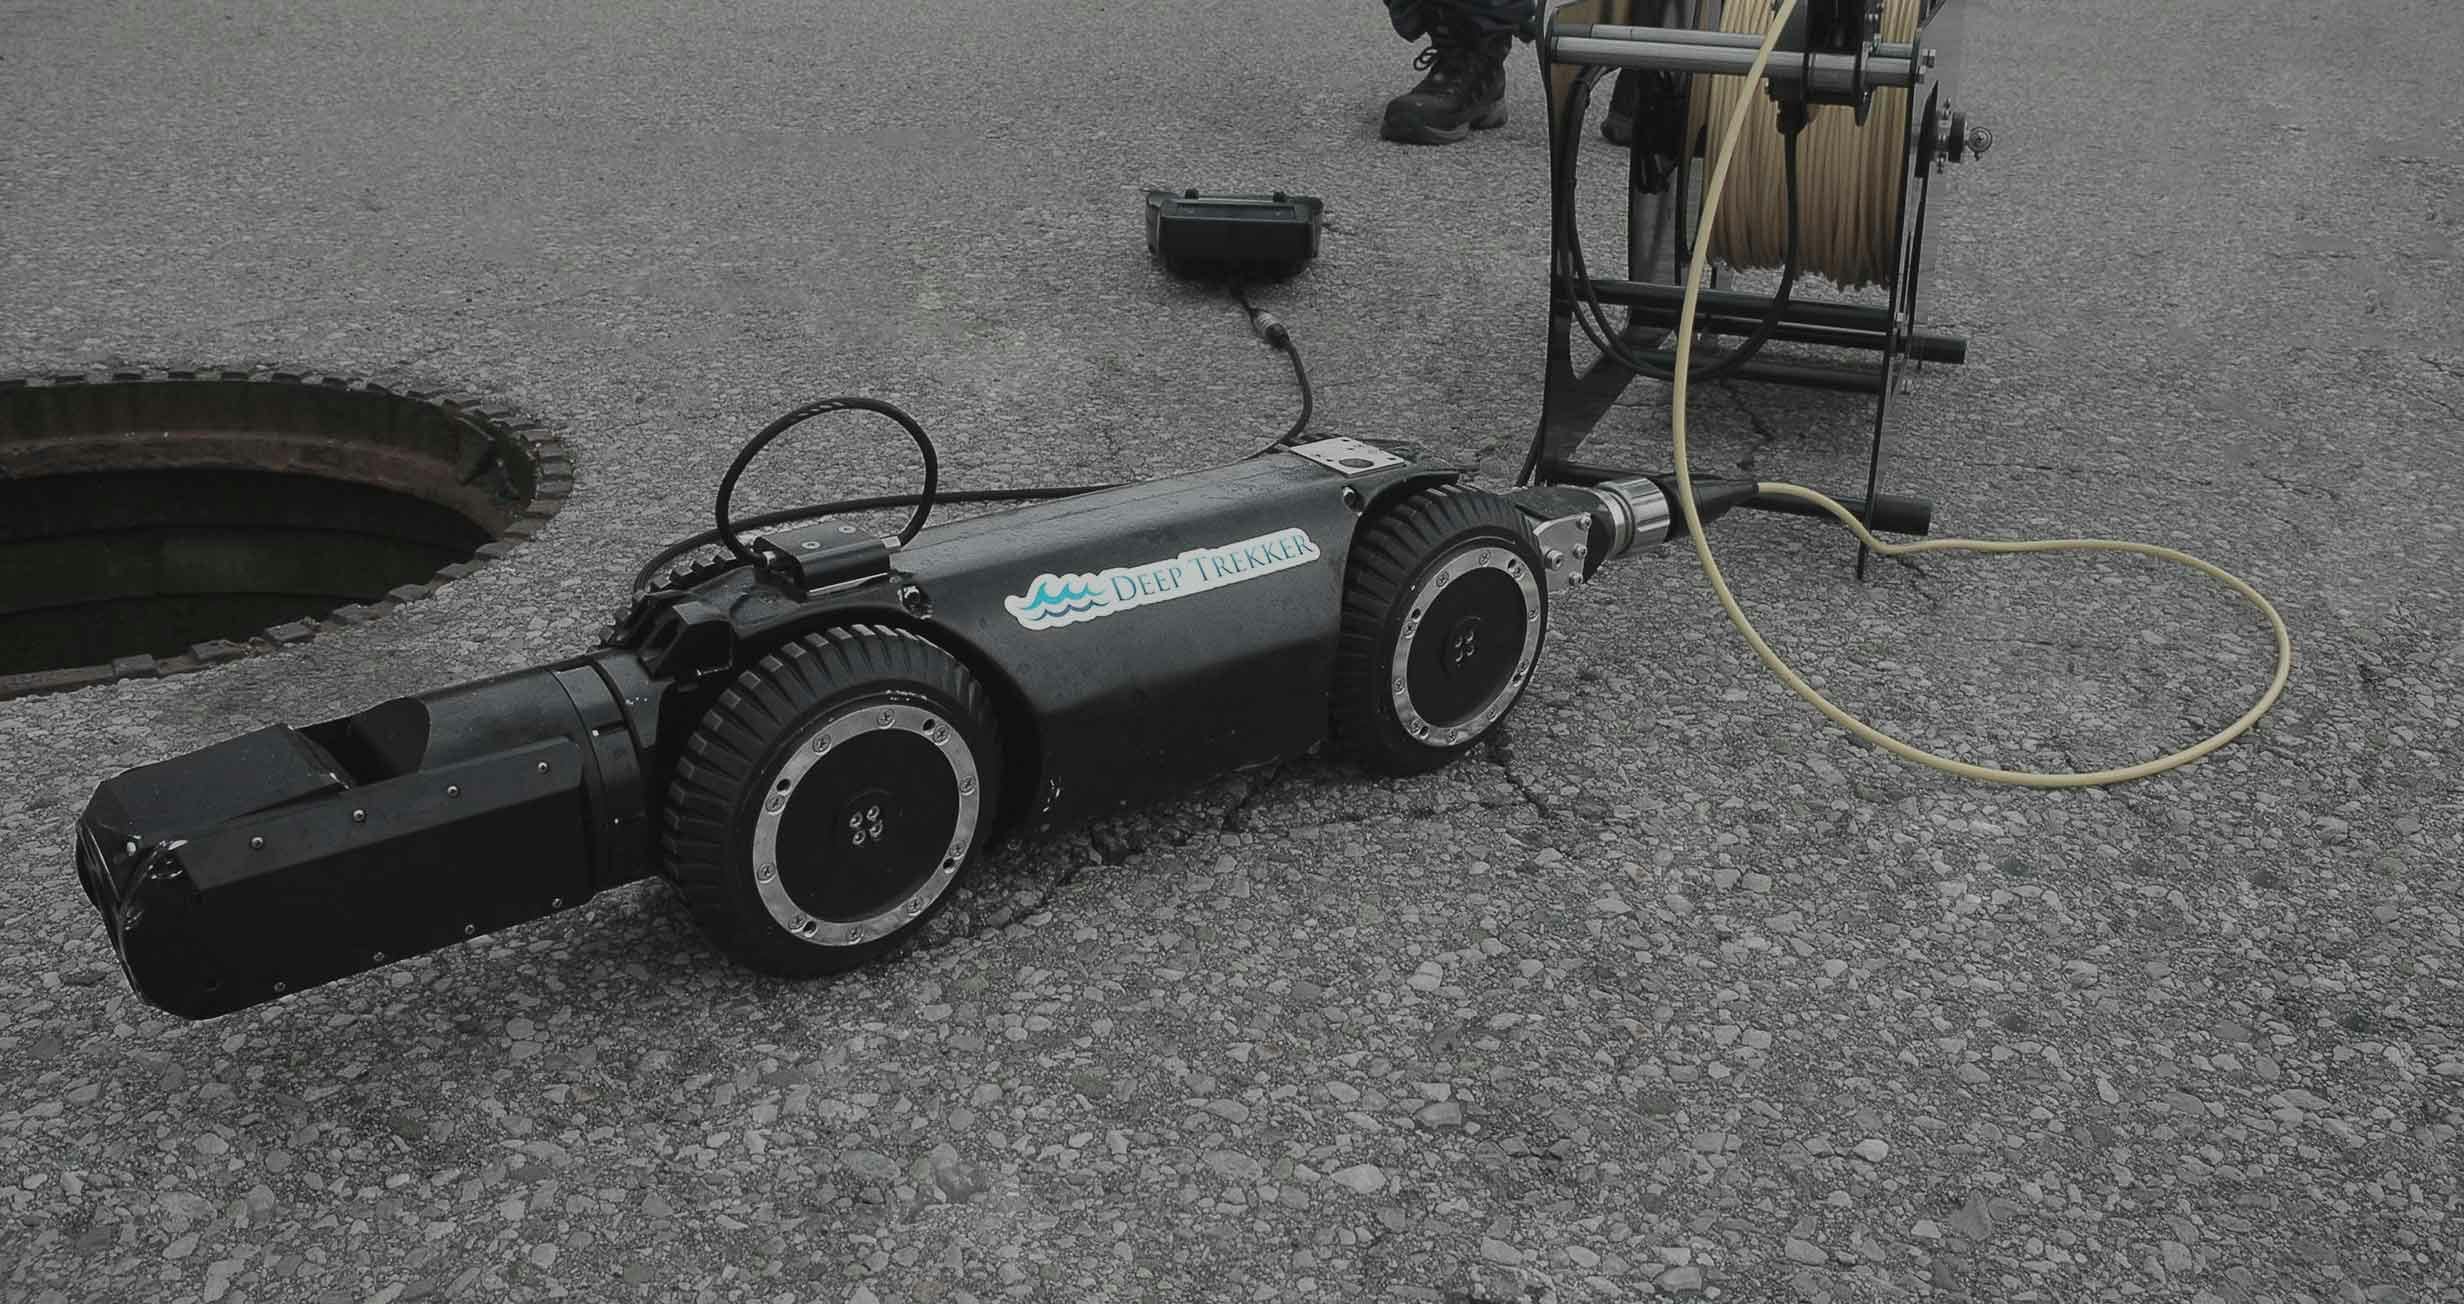 Deep Trekker Robotics for municipal water inspections